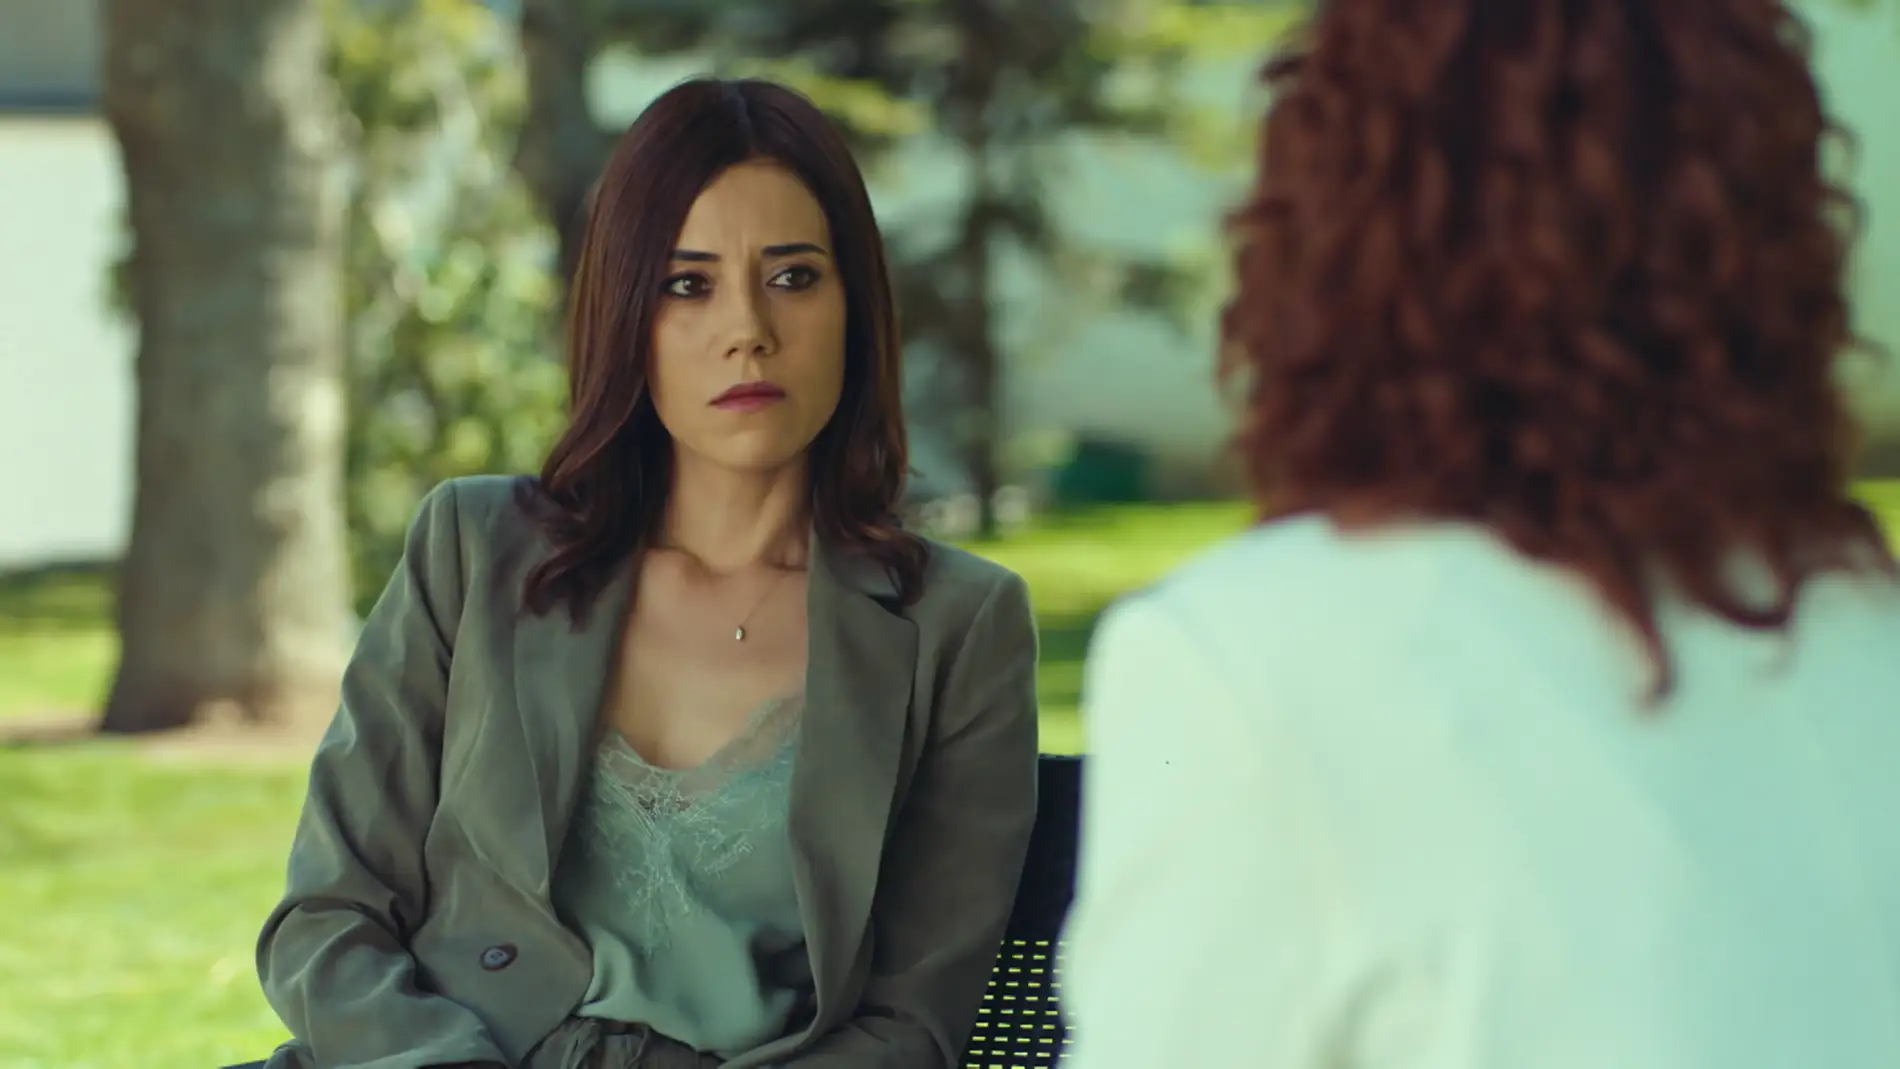 ¡Secretos del pasado salen a la luz!: Asya Günalan le confiesa a la doctora la verdad: “Tu padre me traicionó con tu madre”